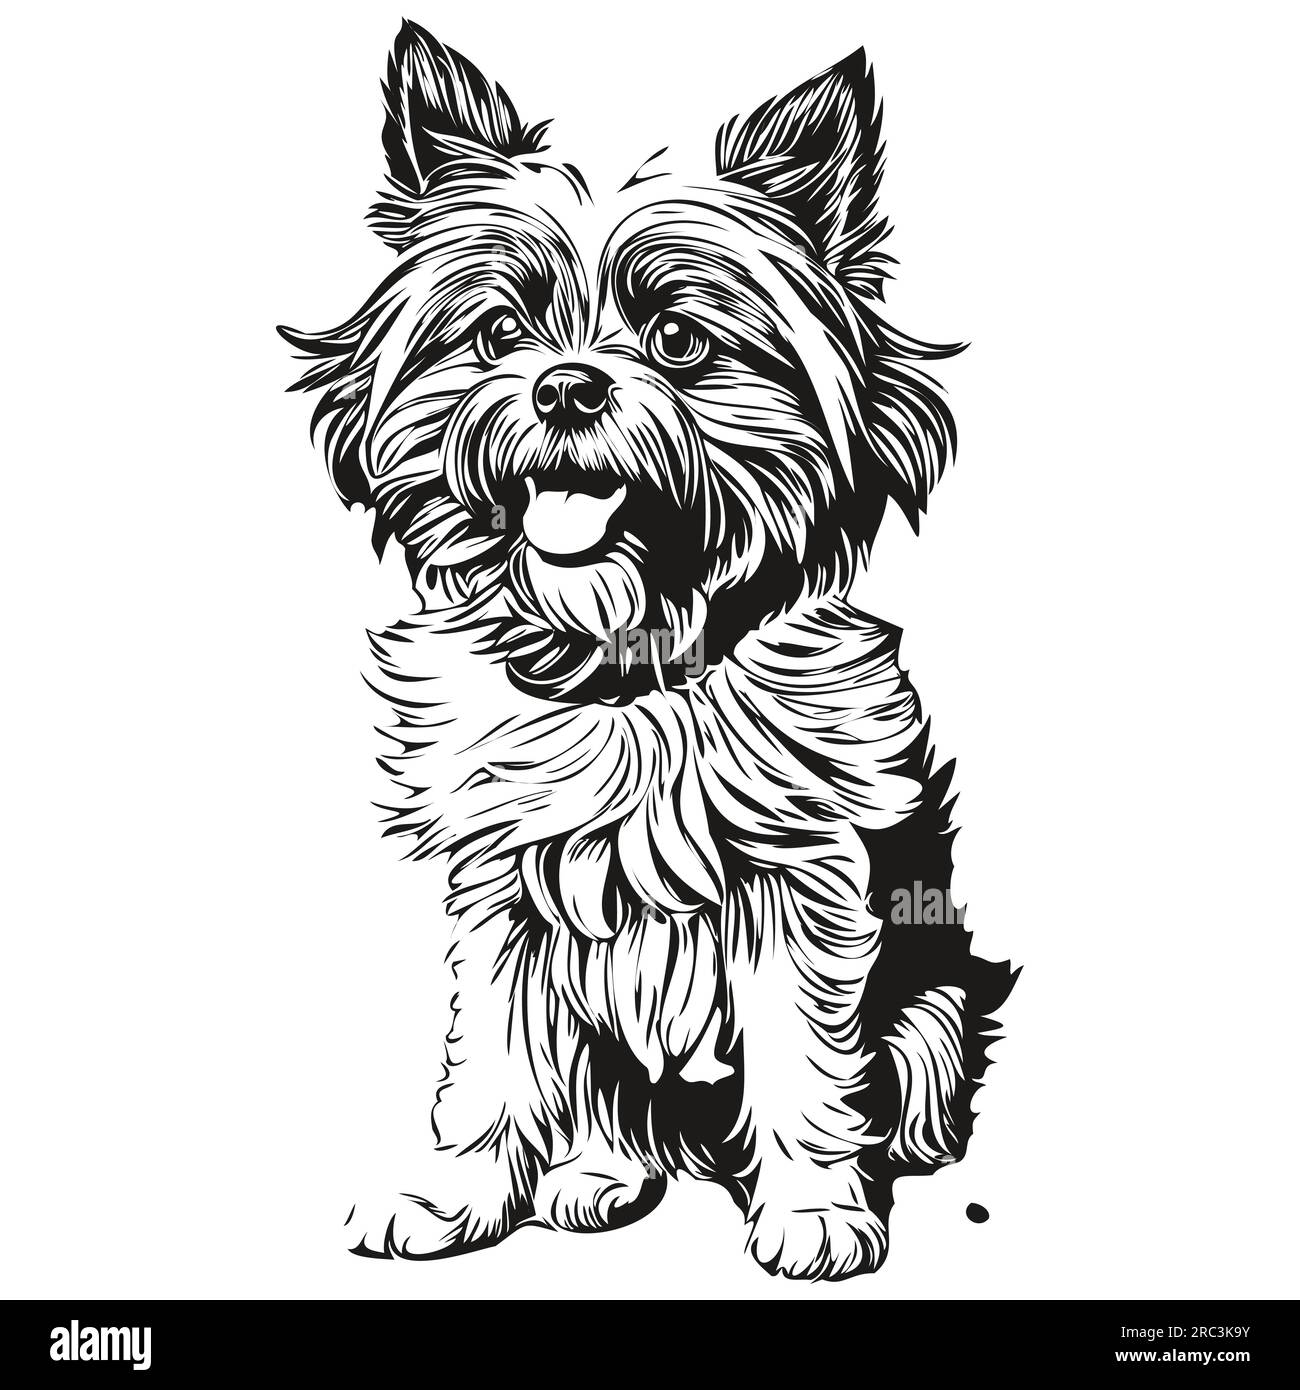 Illustration de dessin au crayon contour de chien Affenpinscher, caractère noir sur fond blanc Illustration de Vecteur